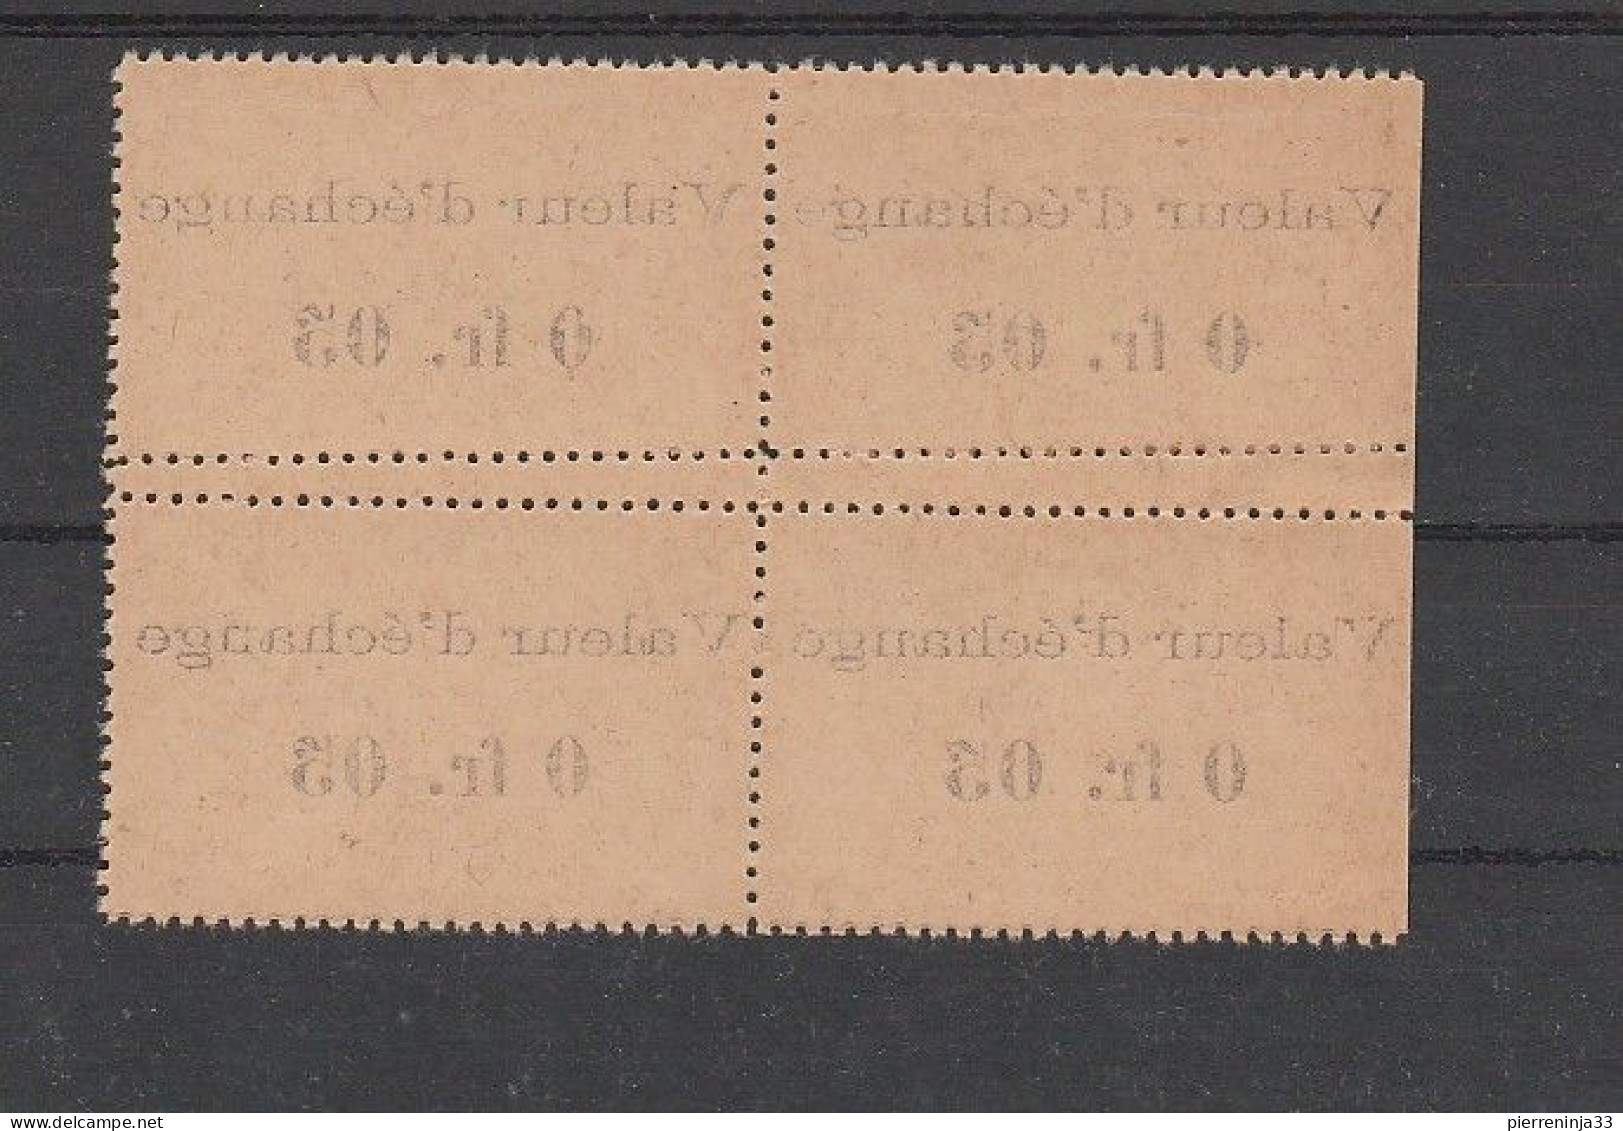 Rare Bloc De 4 Timbres-Monnaie Précurseurs /Côte D'Ivoire N°44 Surchargés "Valeur D'Echange..." + Variété De Dentelure - Unused Stamps